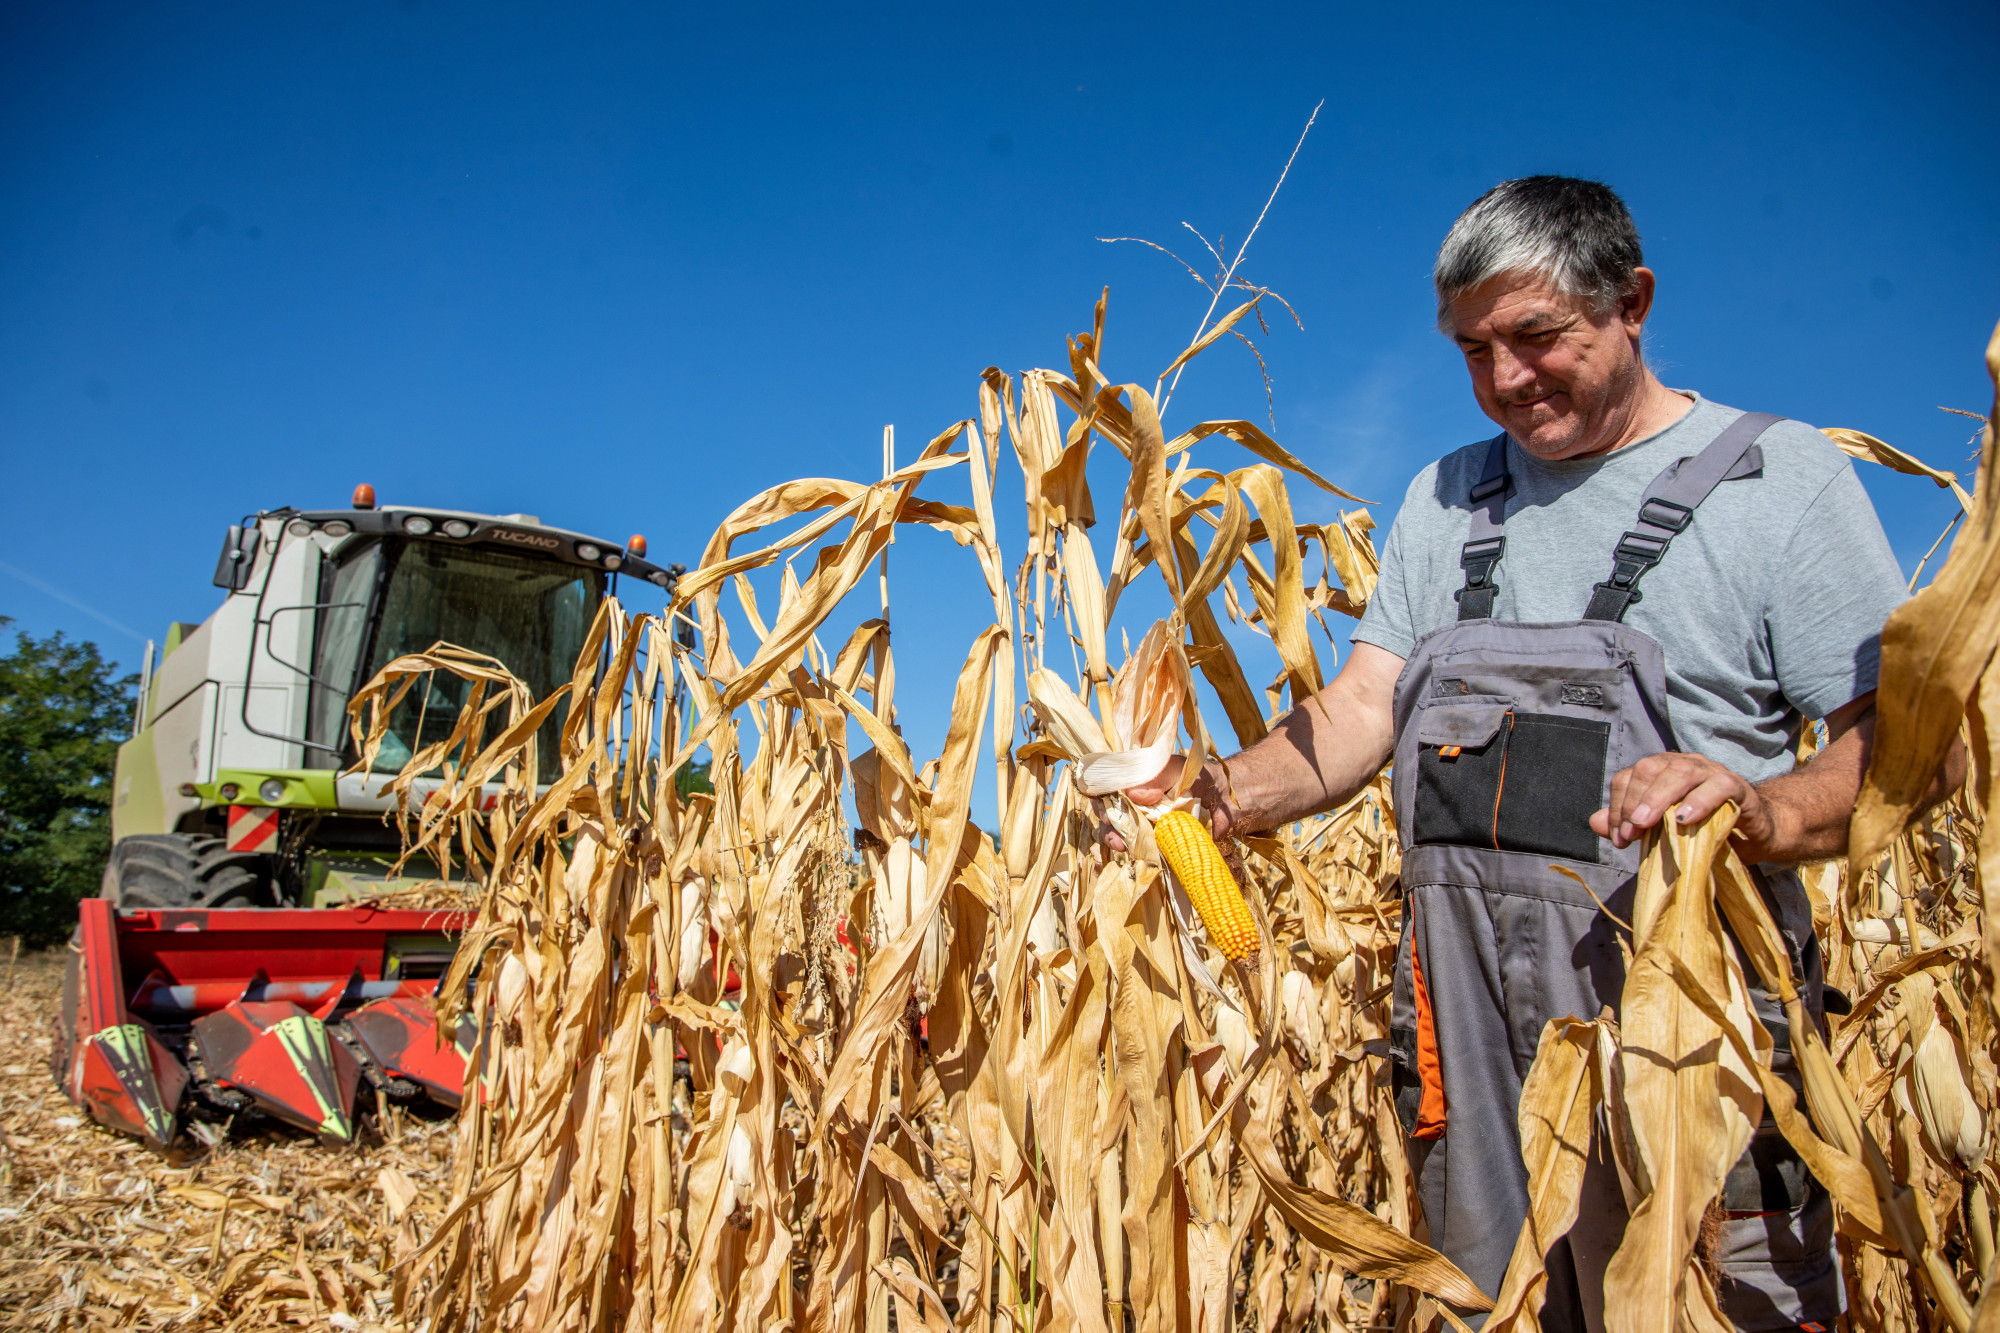 50 éves mélypontra került a magyar kukoricatermelés, és csak a gazdákon múlik, hogy túlélik-e a klímaváltozást